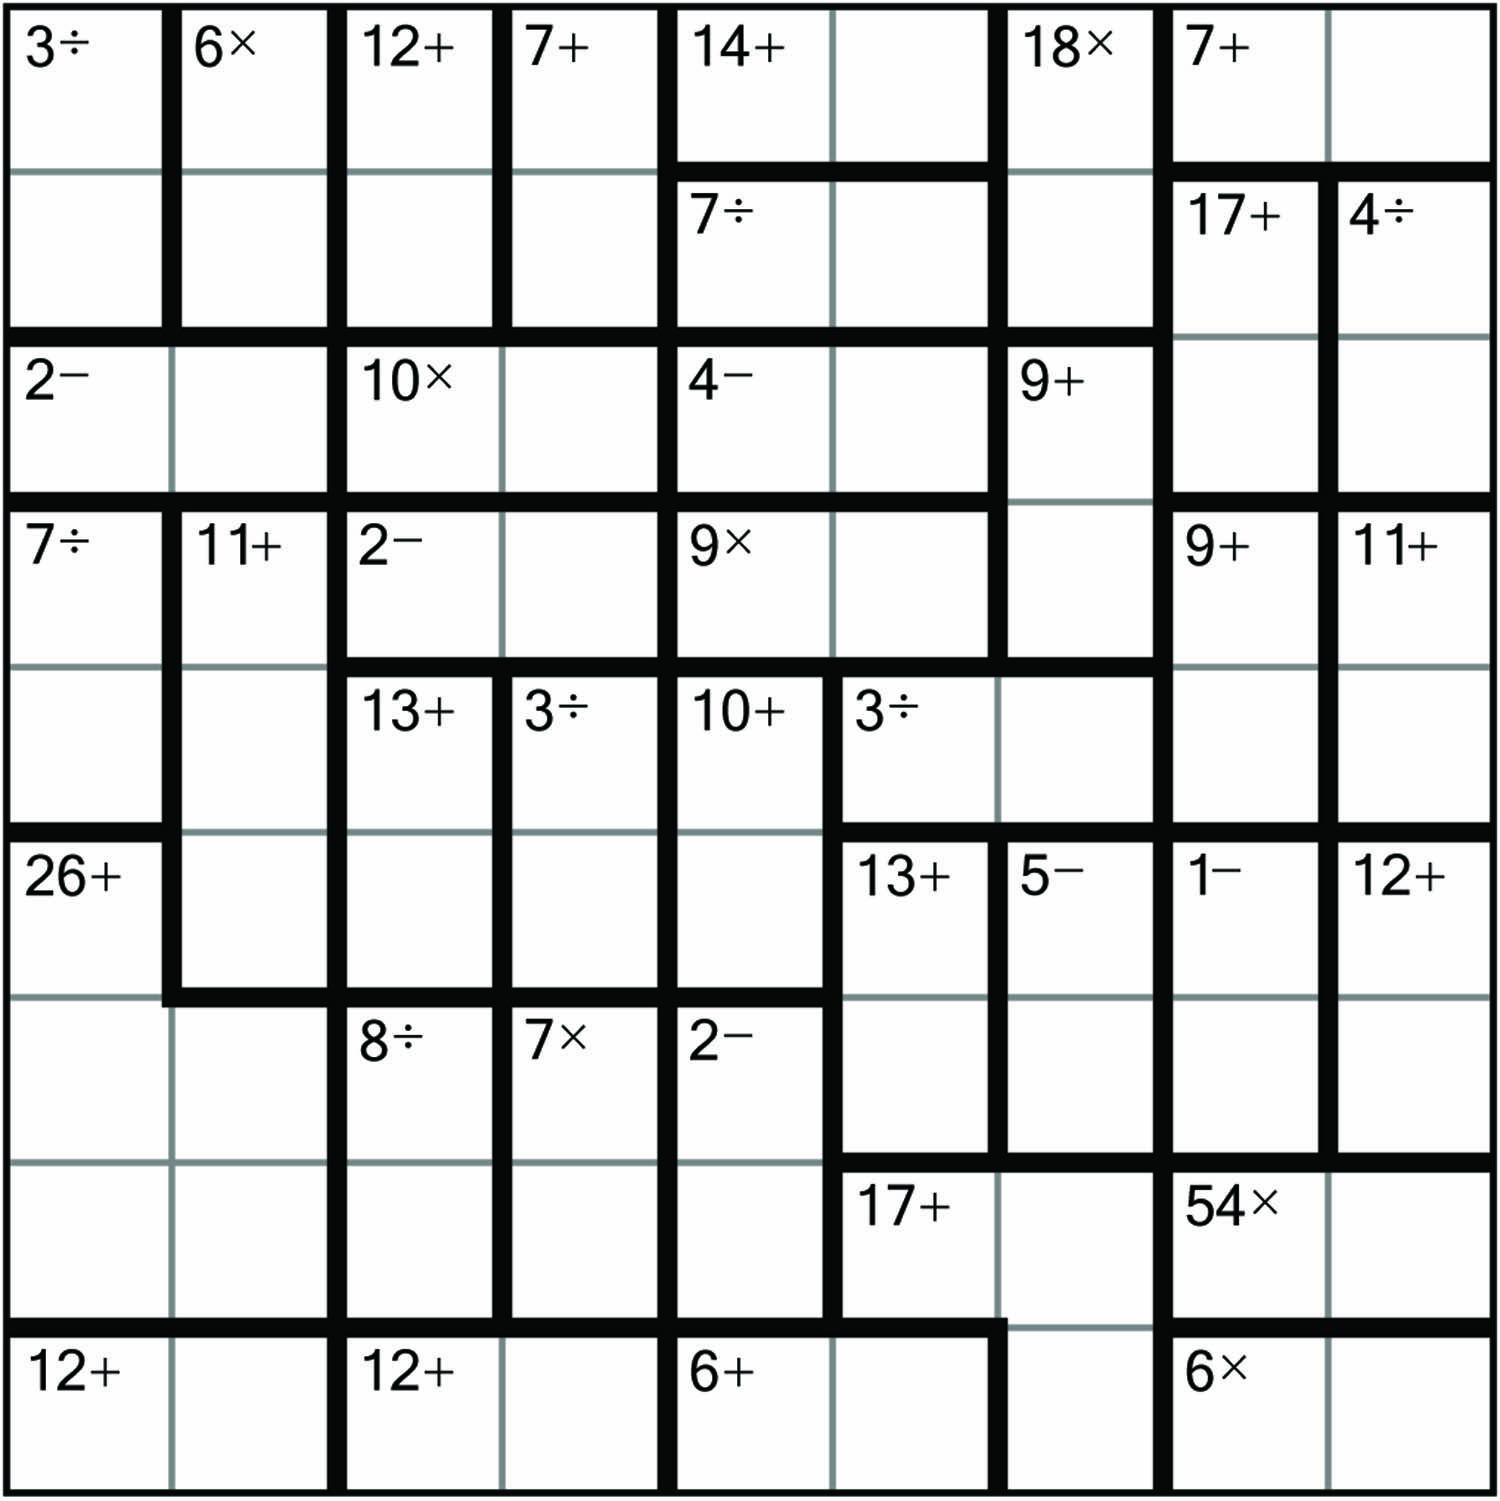 10x10 Sudoku Printable